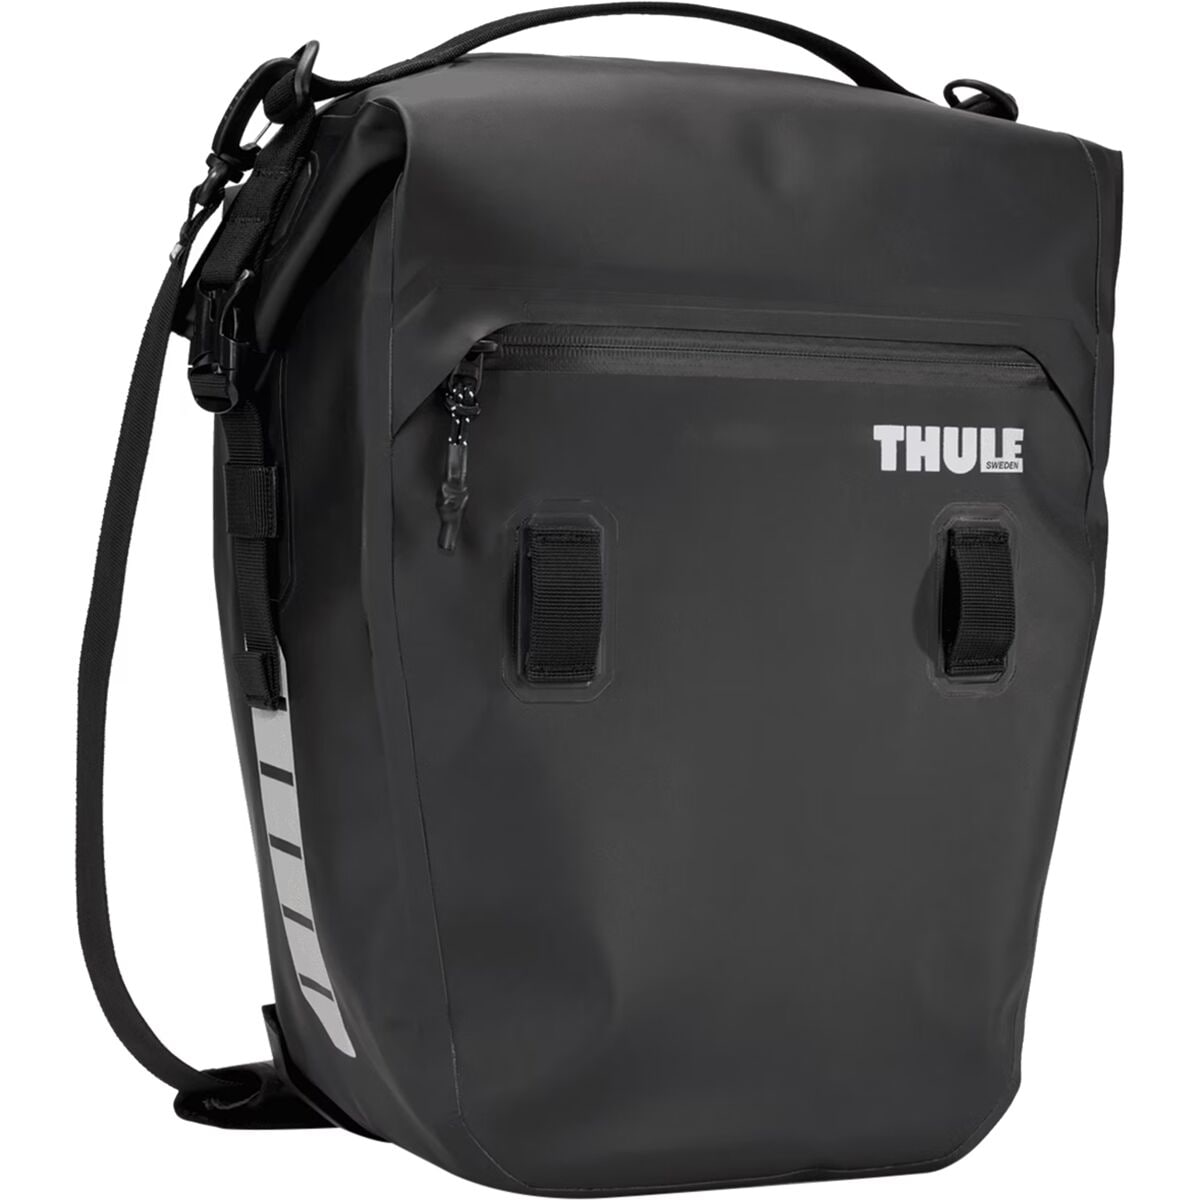 Корзина shield 22l Thule, черный сумка для ноутбука 11 13 дюймов шерстяной фетровый чехол для ноутбука чехол для macbook портфель чехол для ноутбука чехол для huawei matebook сумка д